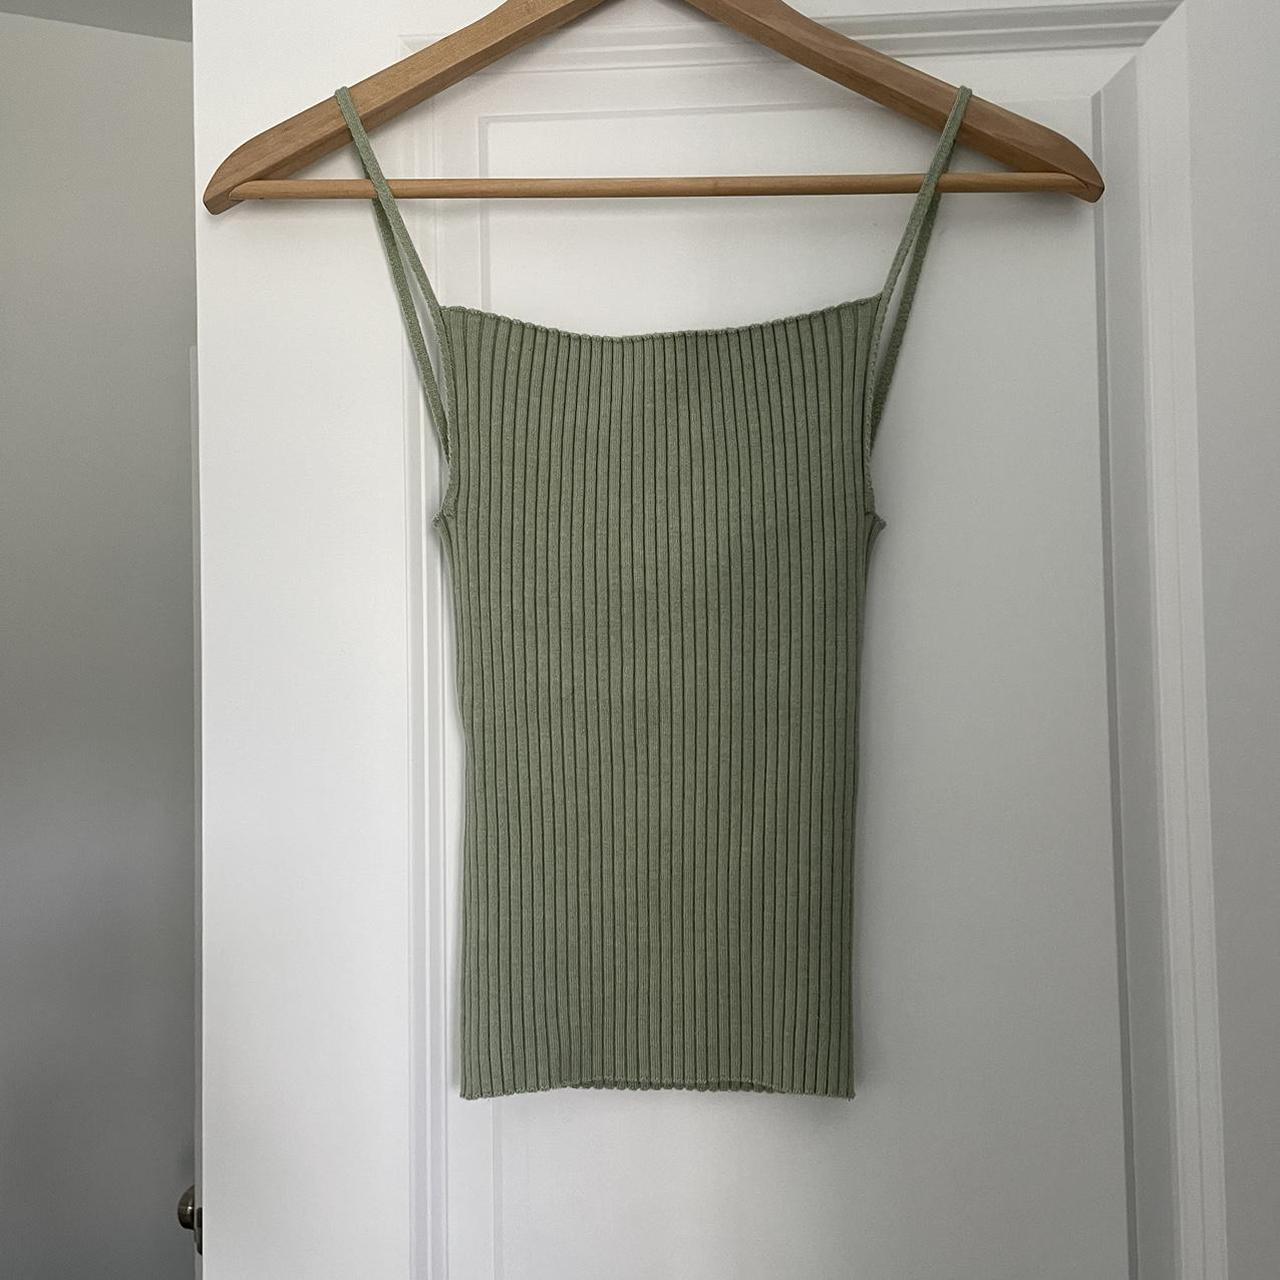 Paloma Wool Women's Green Vest (2)